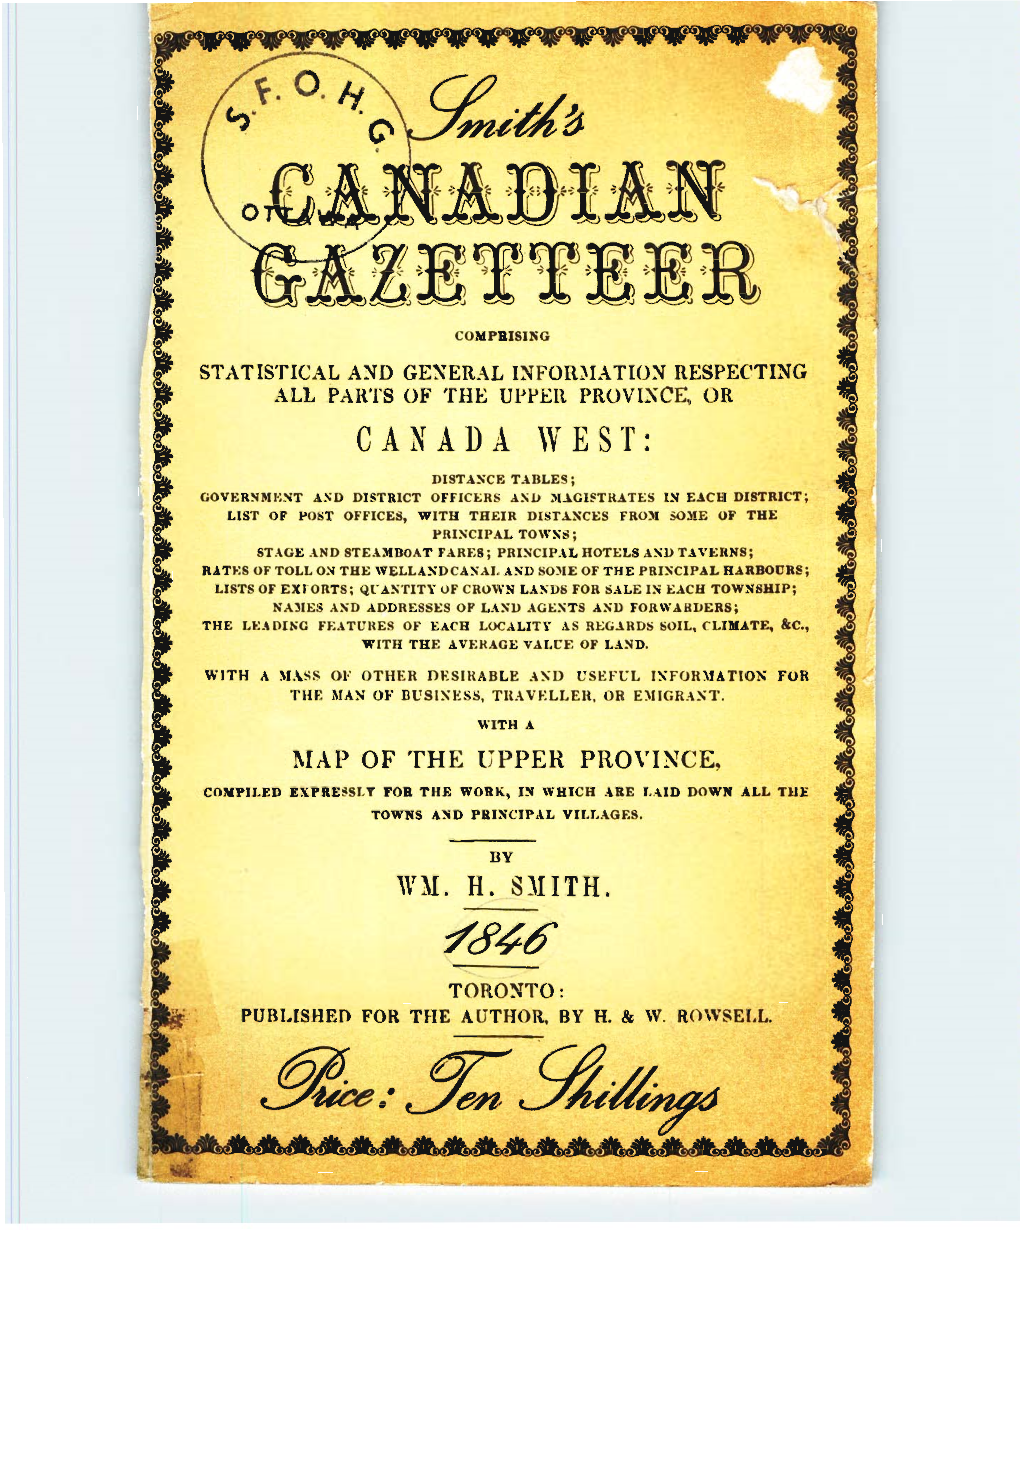 Smith's Canadian Gazetteer